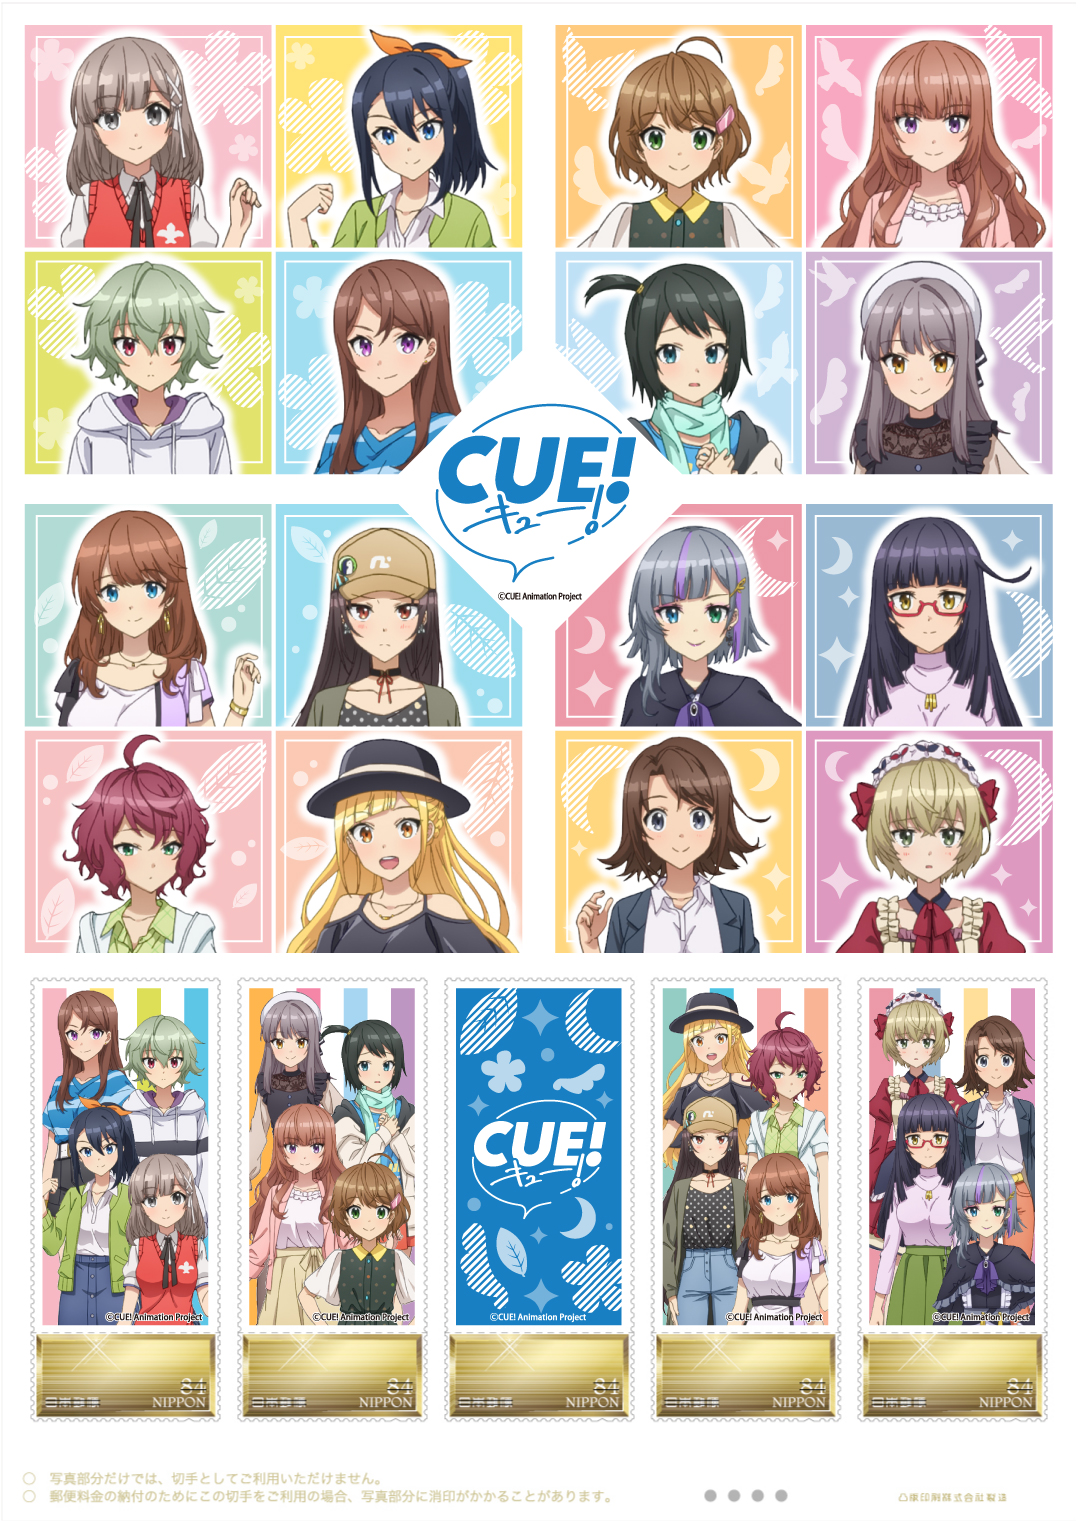 オリジナル フレーム切手「TVアニメ『CUE!』」の販売開始